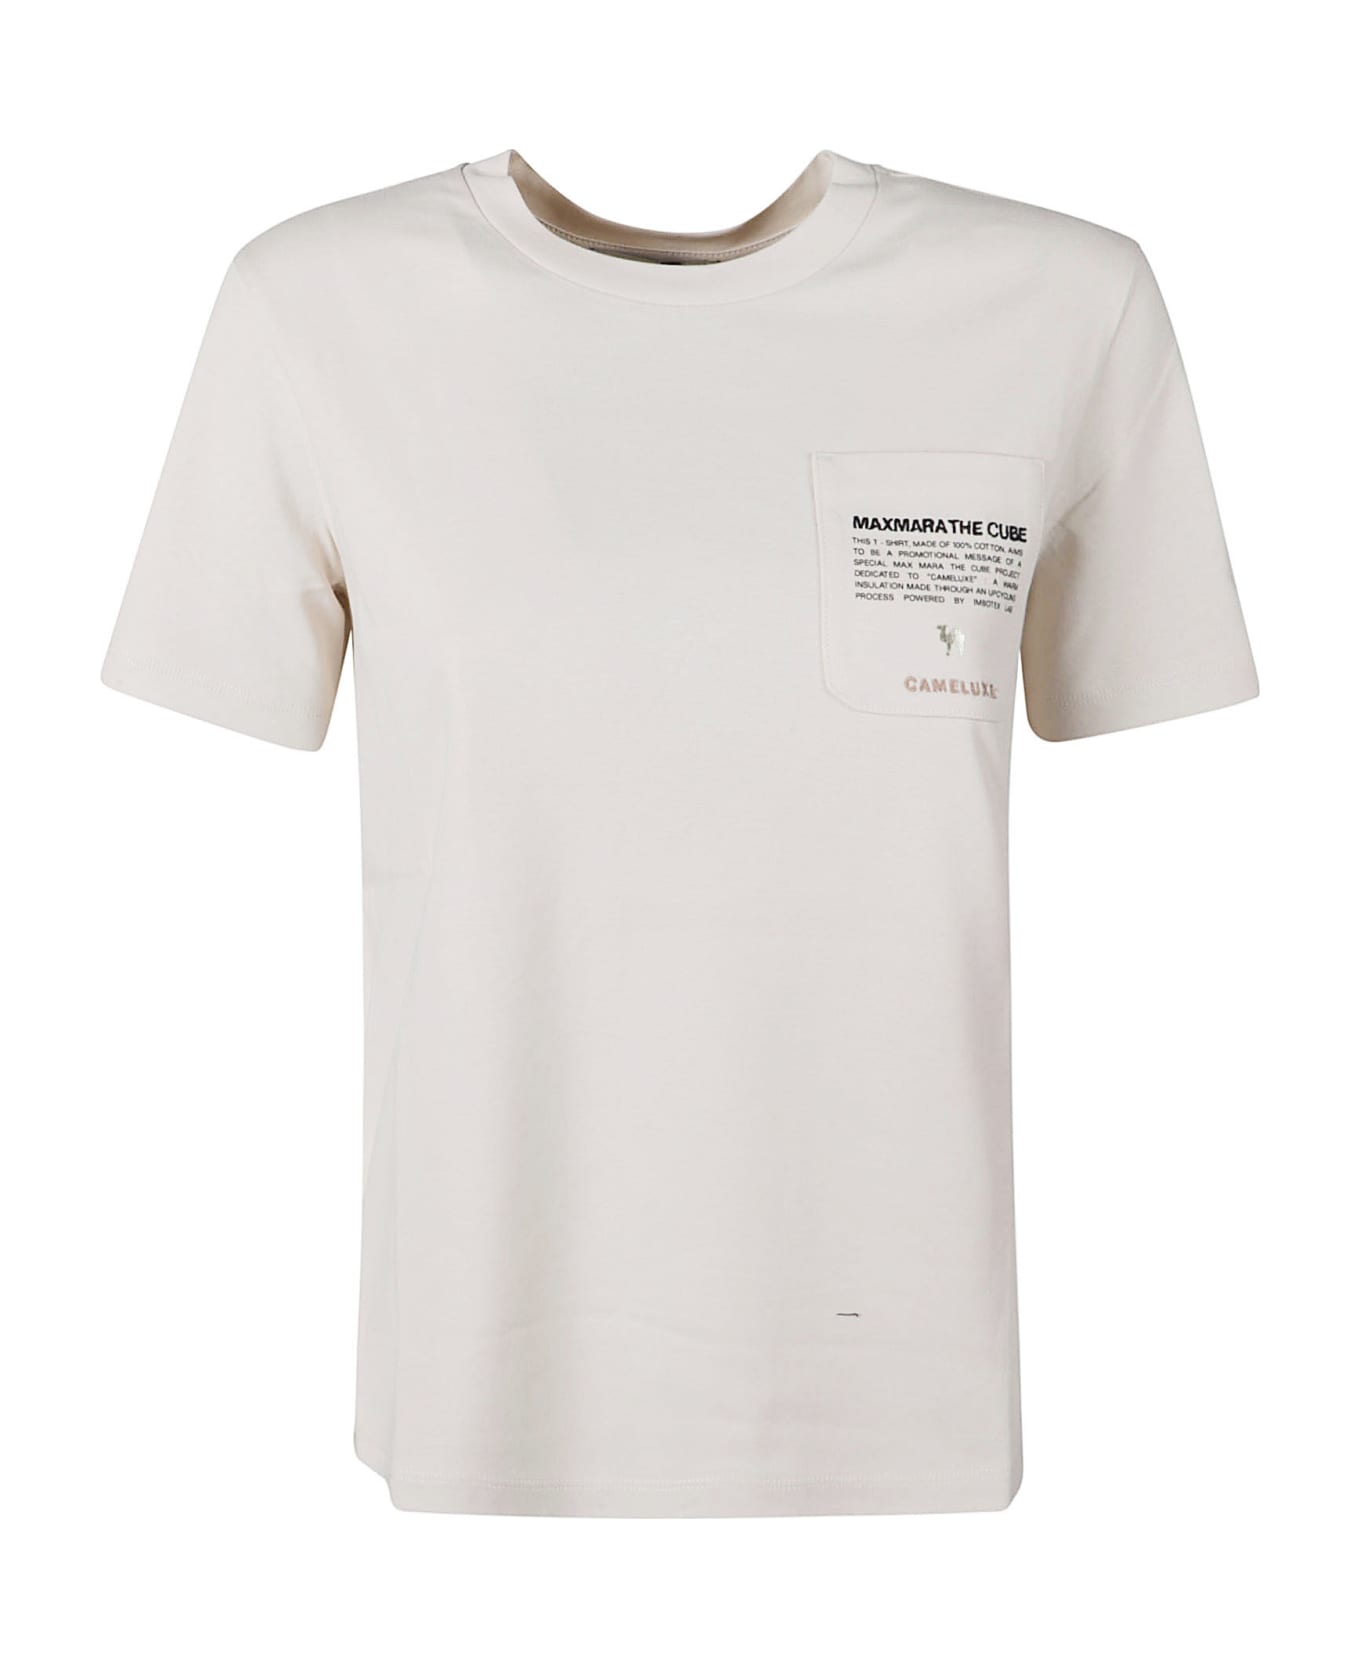 'S Max Mara Sax T-shirt - White Tシャツ